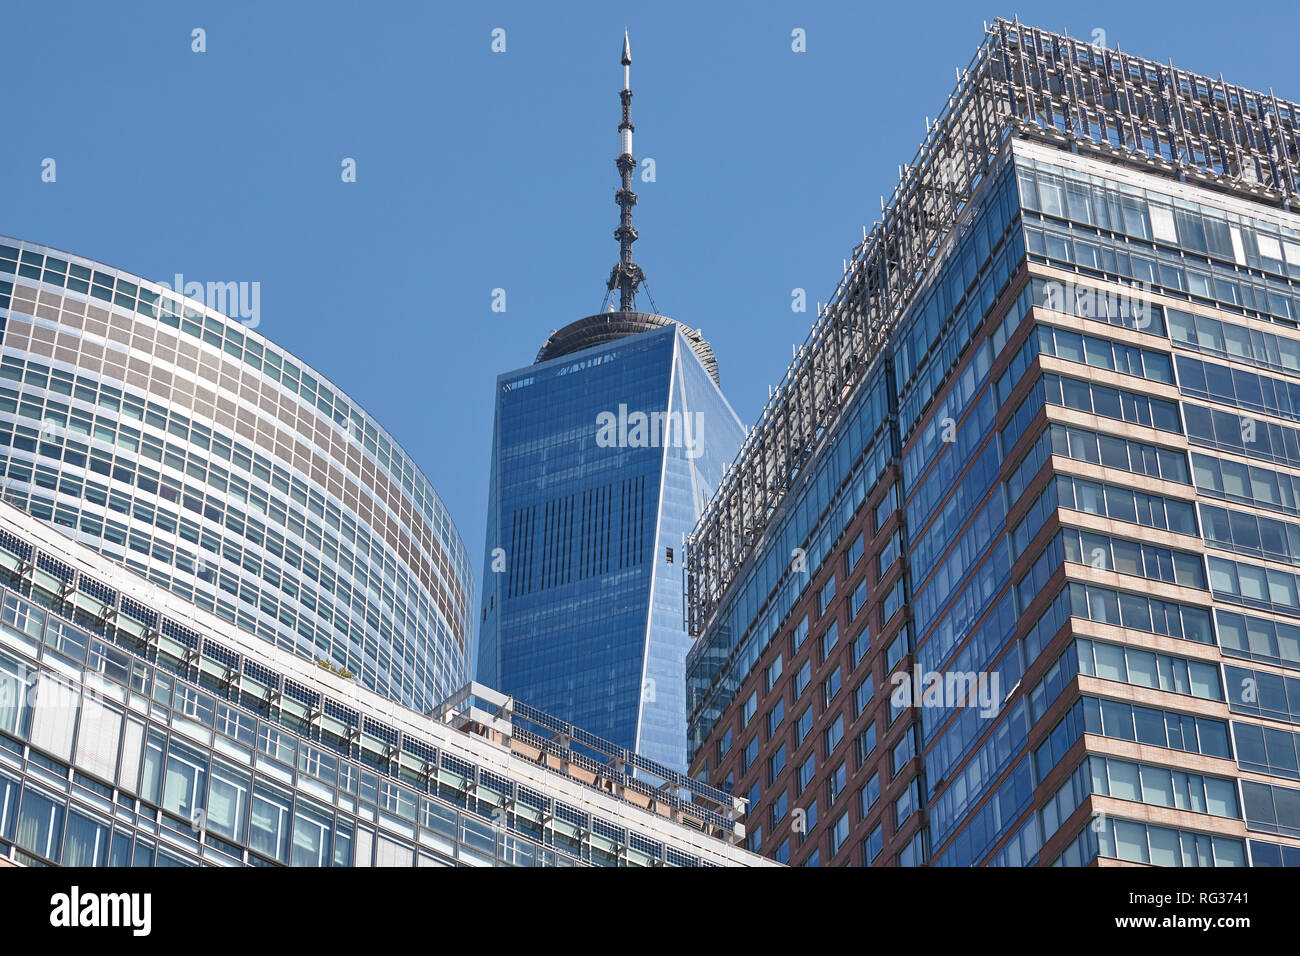 Nueva York, Estados Unidos - Julio 07, 2018: una torre del World Trade Center spire, visto desde el Battery Park en un día soleado. Foto de stock